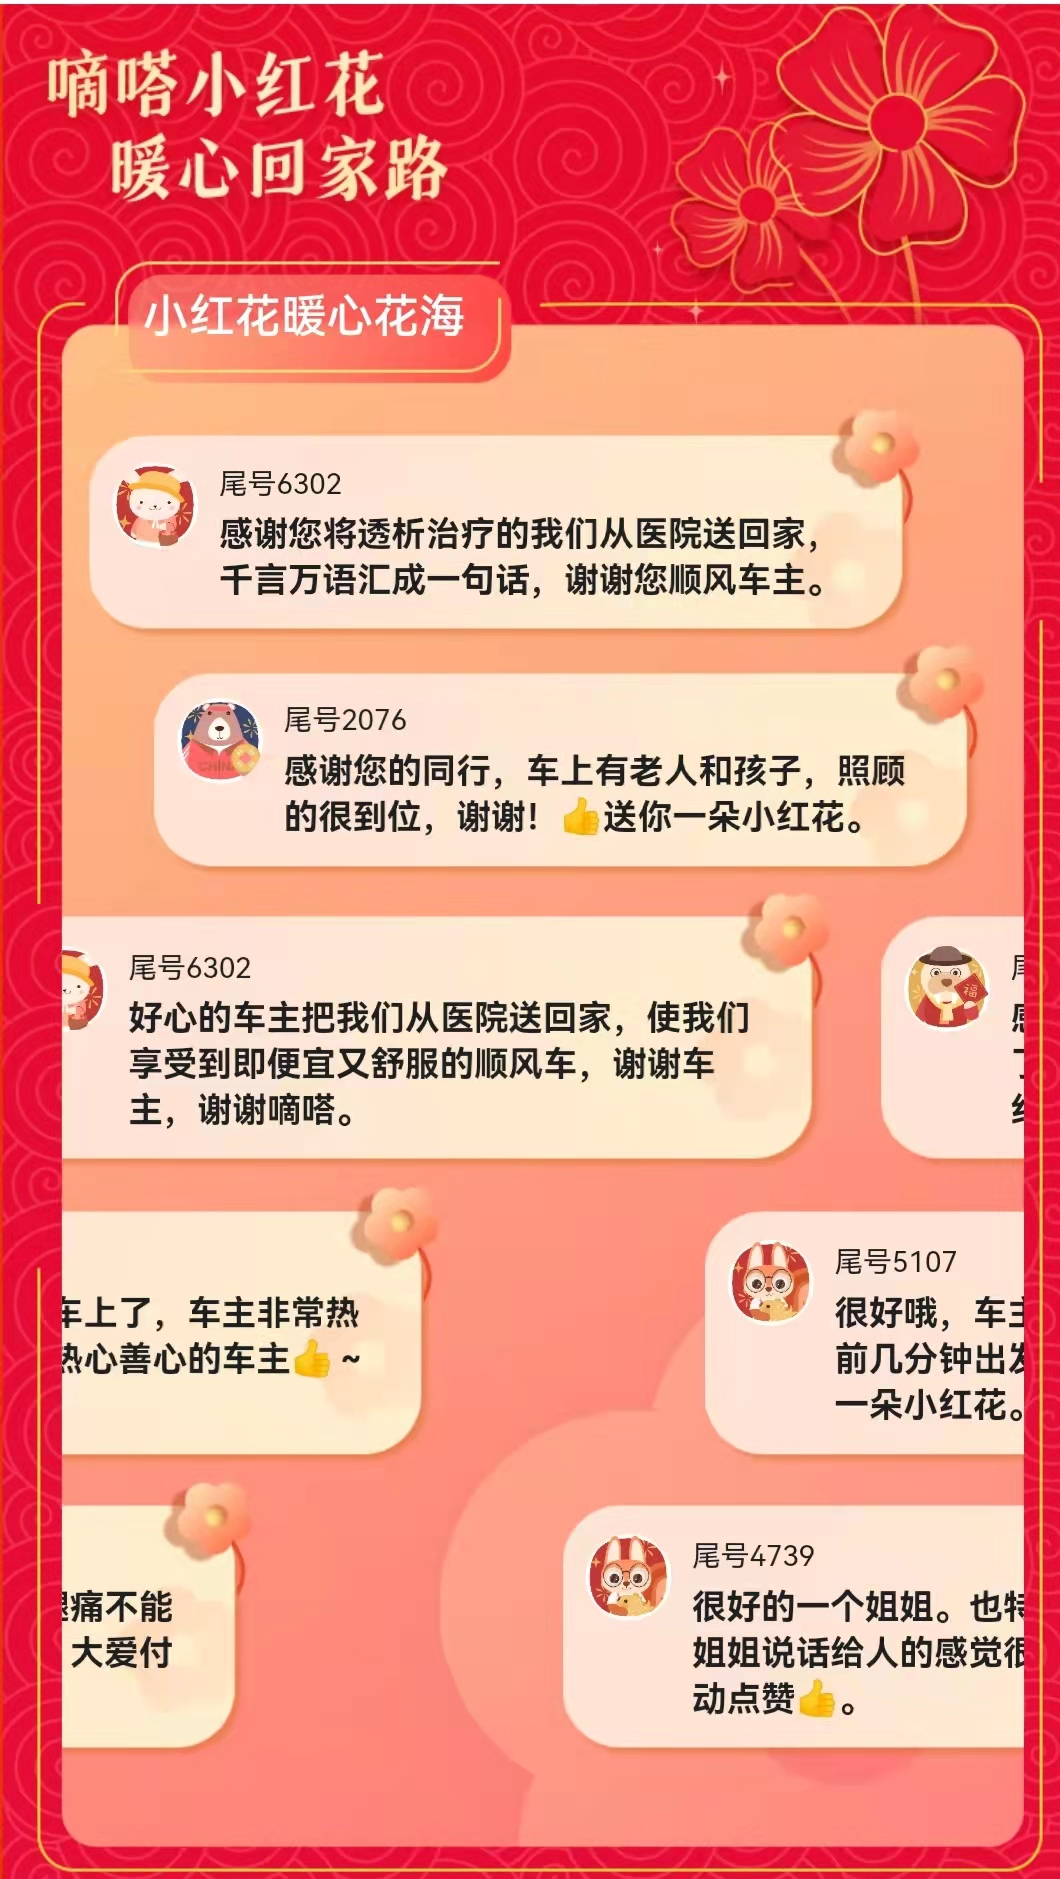 虎年春节出行“秘籍”来了 嘀嗒出行联动多方上线2022春节安心频道